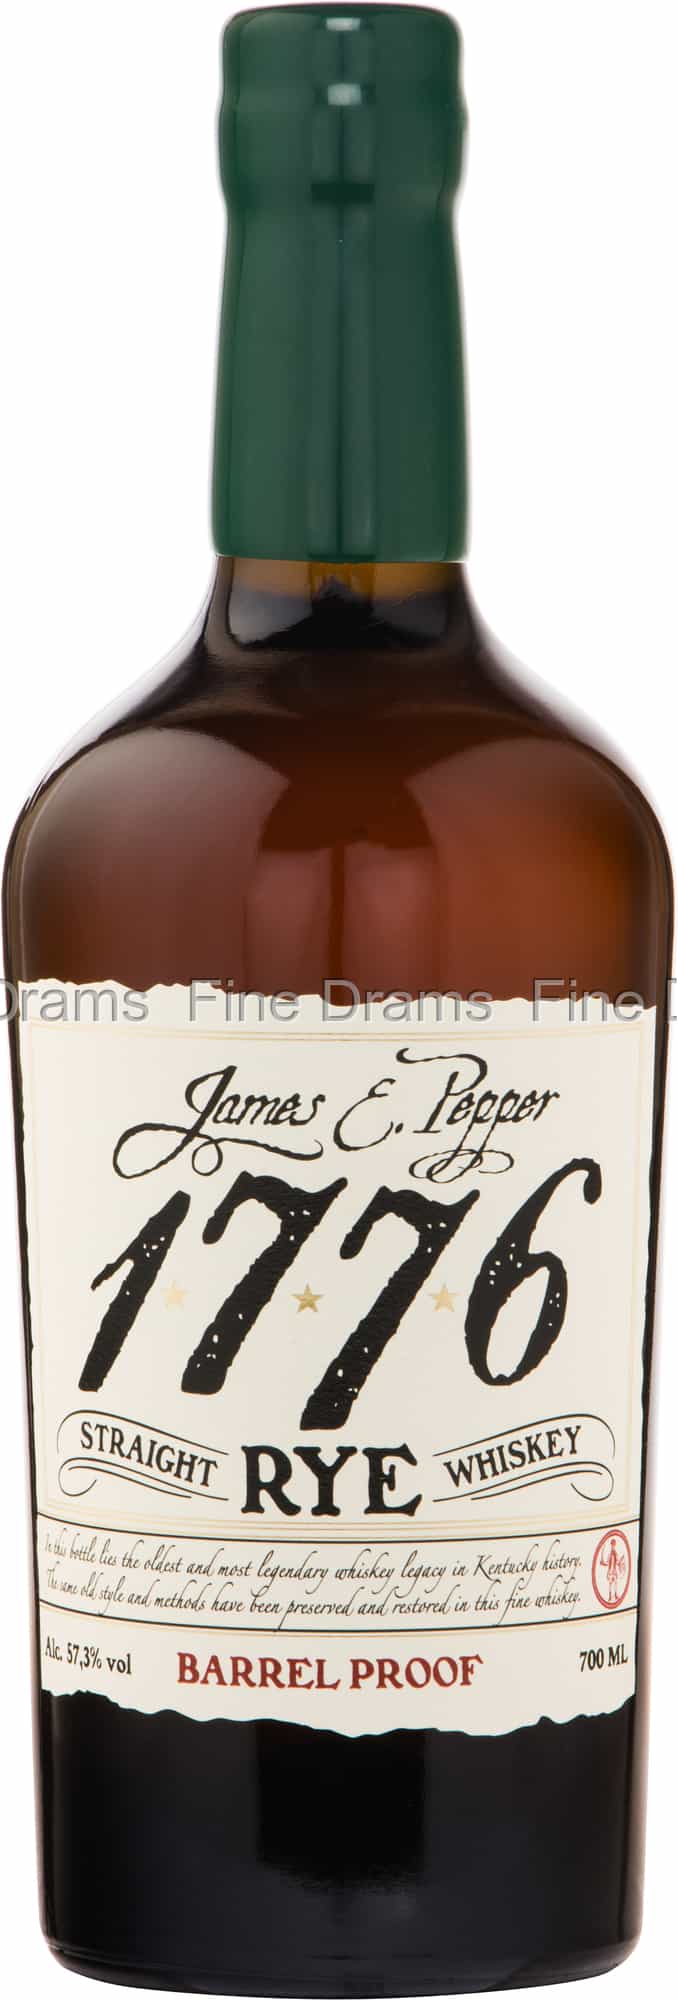 Pepper E. Rye Proof Barrel Whiskey James 1776